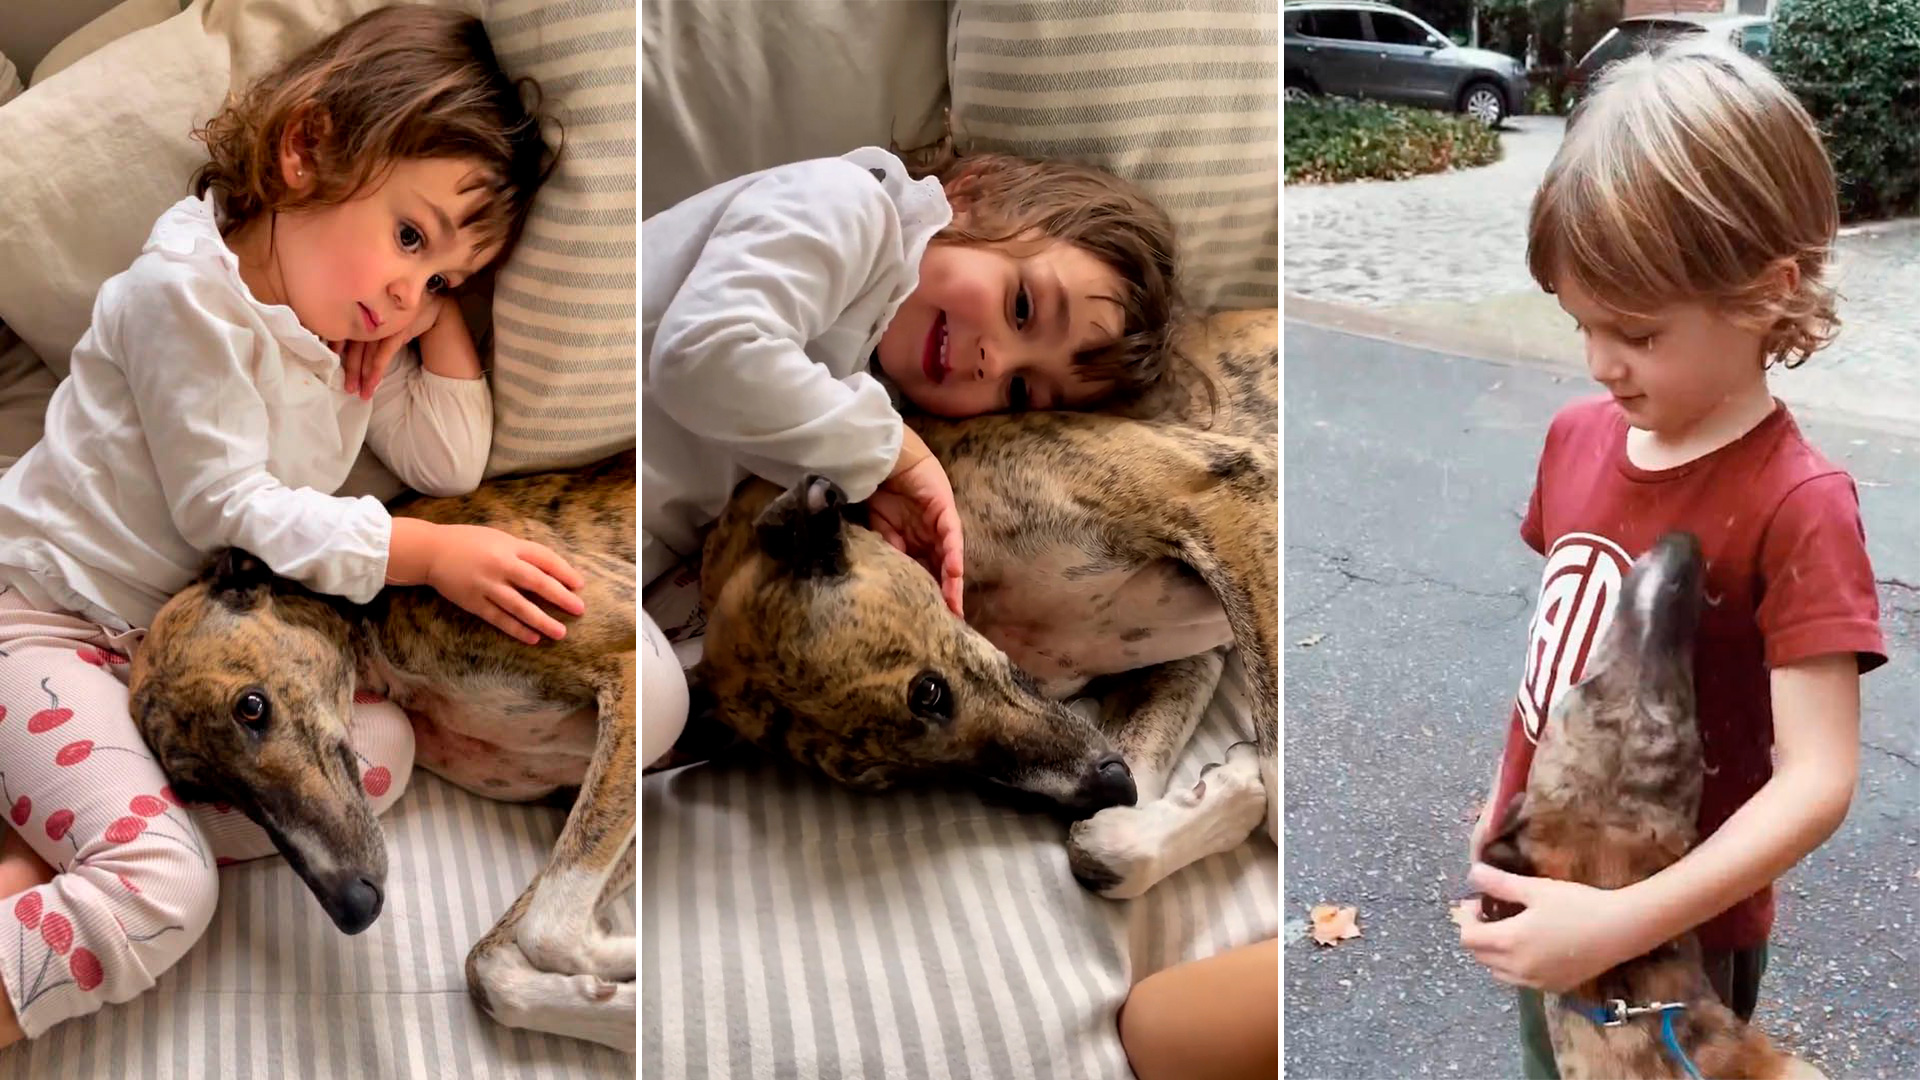 Paula Chaves y Pedro Alfonso adoptaron a una perra y la presentaron con un tierno video junto a sus hijos